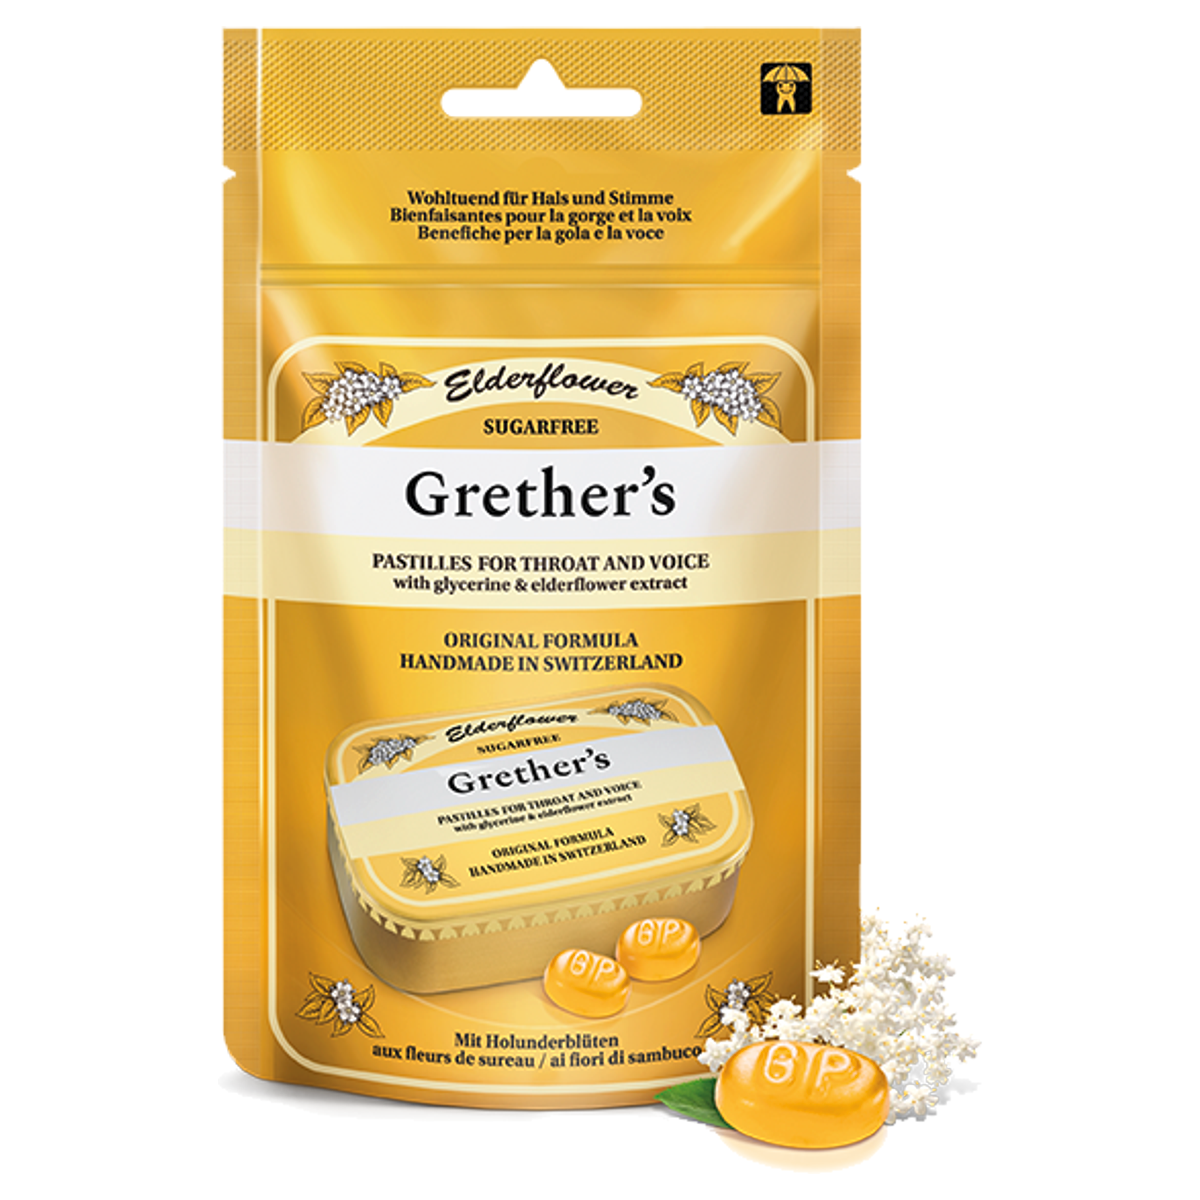 Grethers Elderflower Pastillen ohne Zucker Beutel 110 g